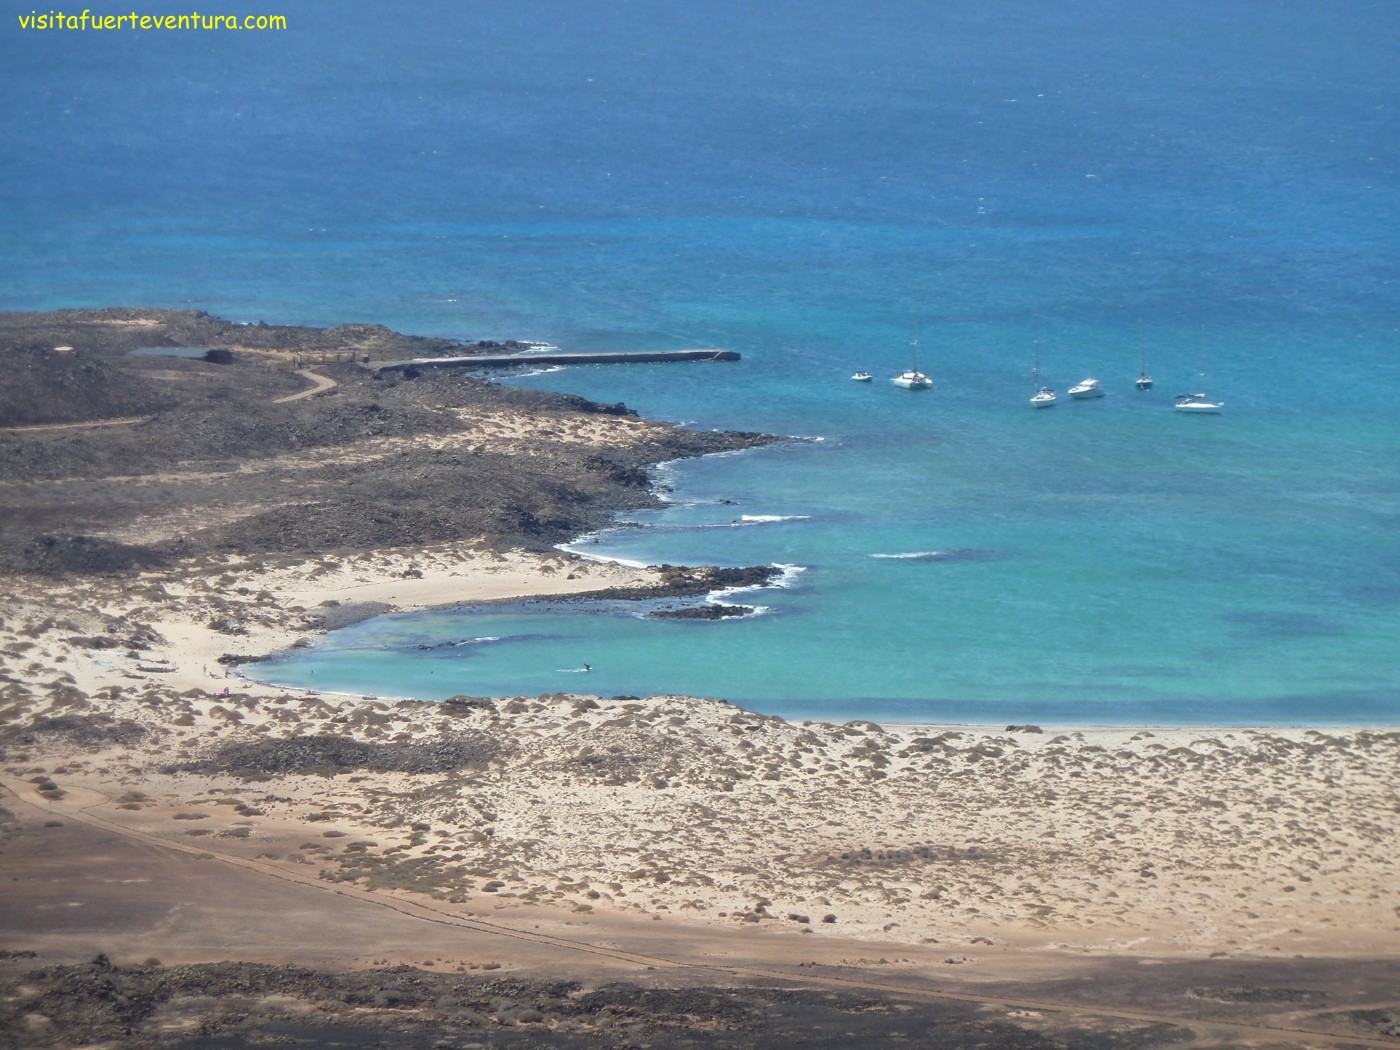 Isla de Lobos. Playa de la Concha. Fuerteventura.